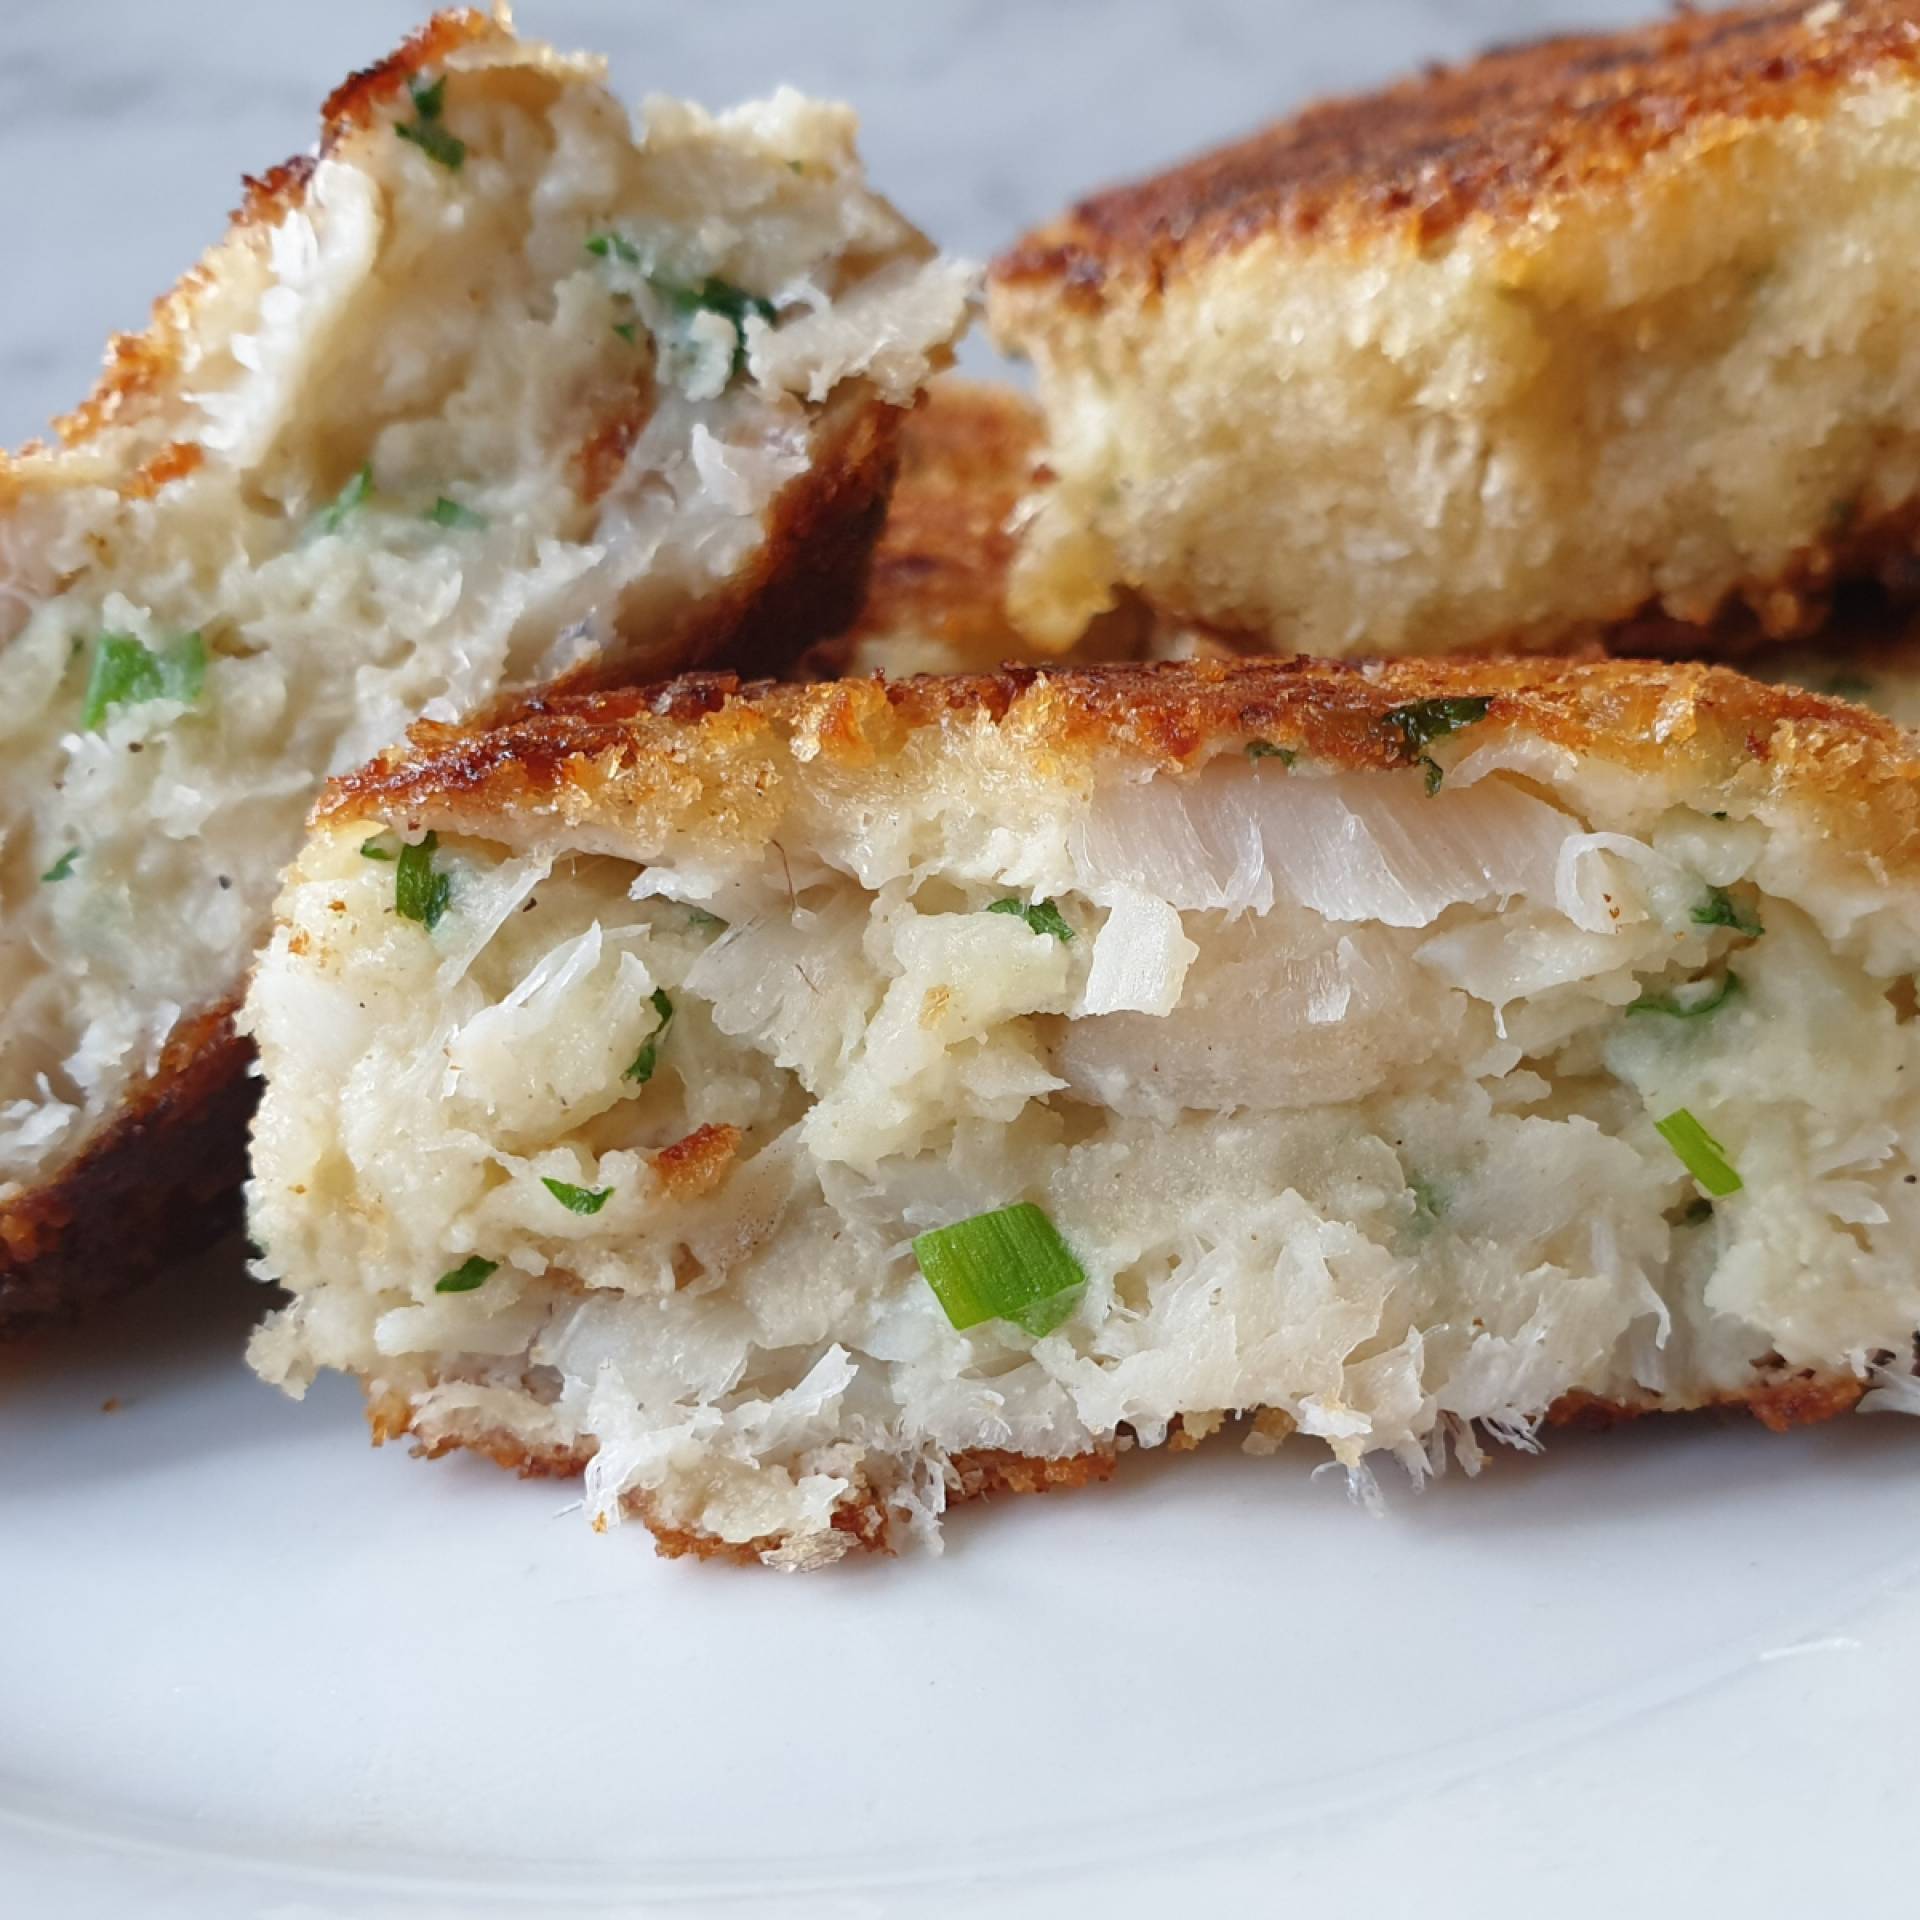 FRESH HARVEST-Flakey White Fish & Redskin Potato Cake w/Chive Garlic Remoulade...Fresh Garlic Broccoli.